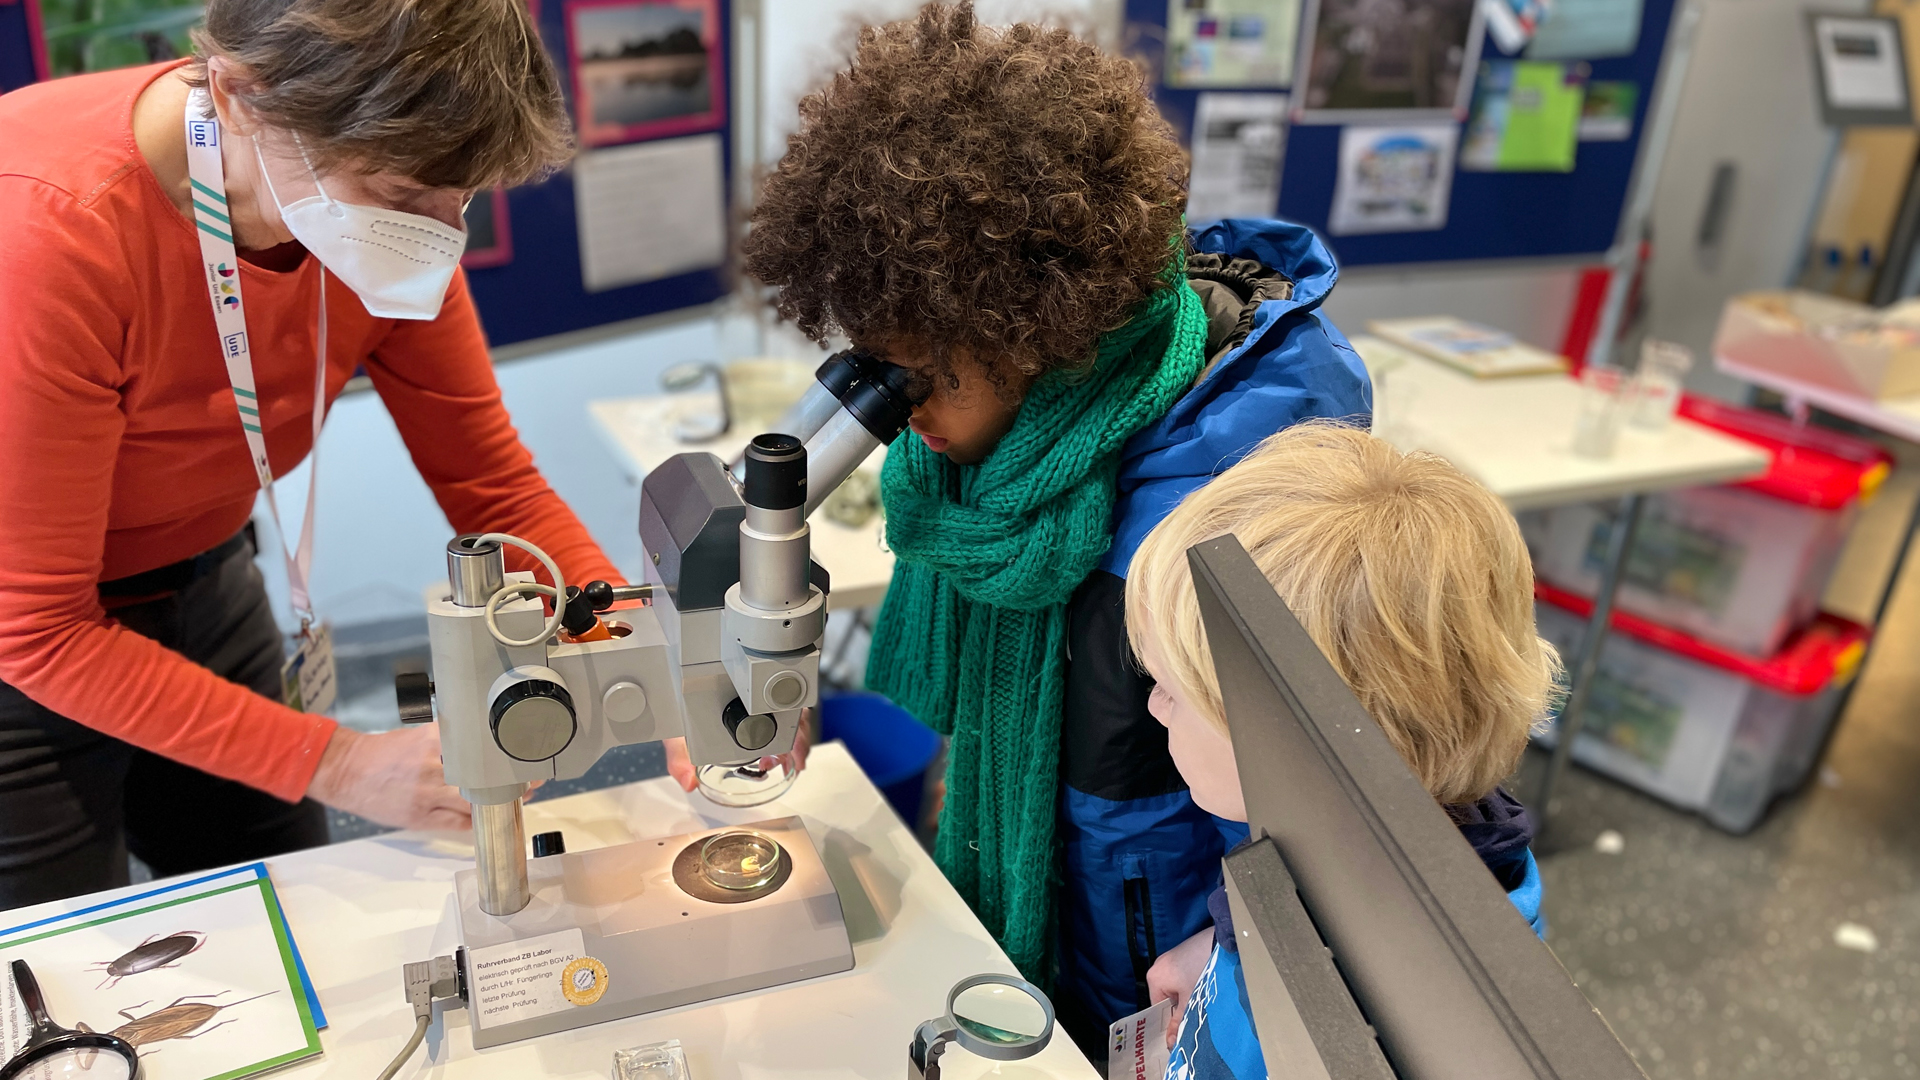 Eine Frau links im Bild zeigt zwei kleinen Kindern wie ein Mikroskop funktioniert